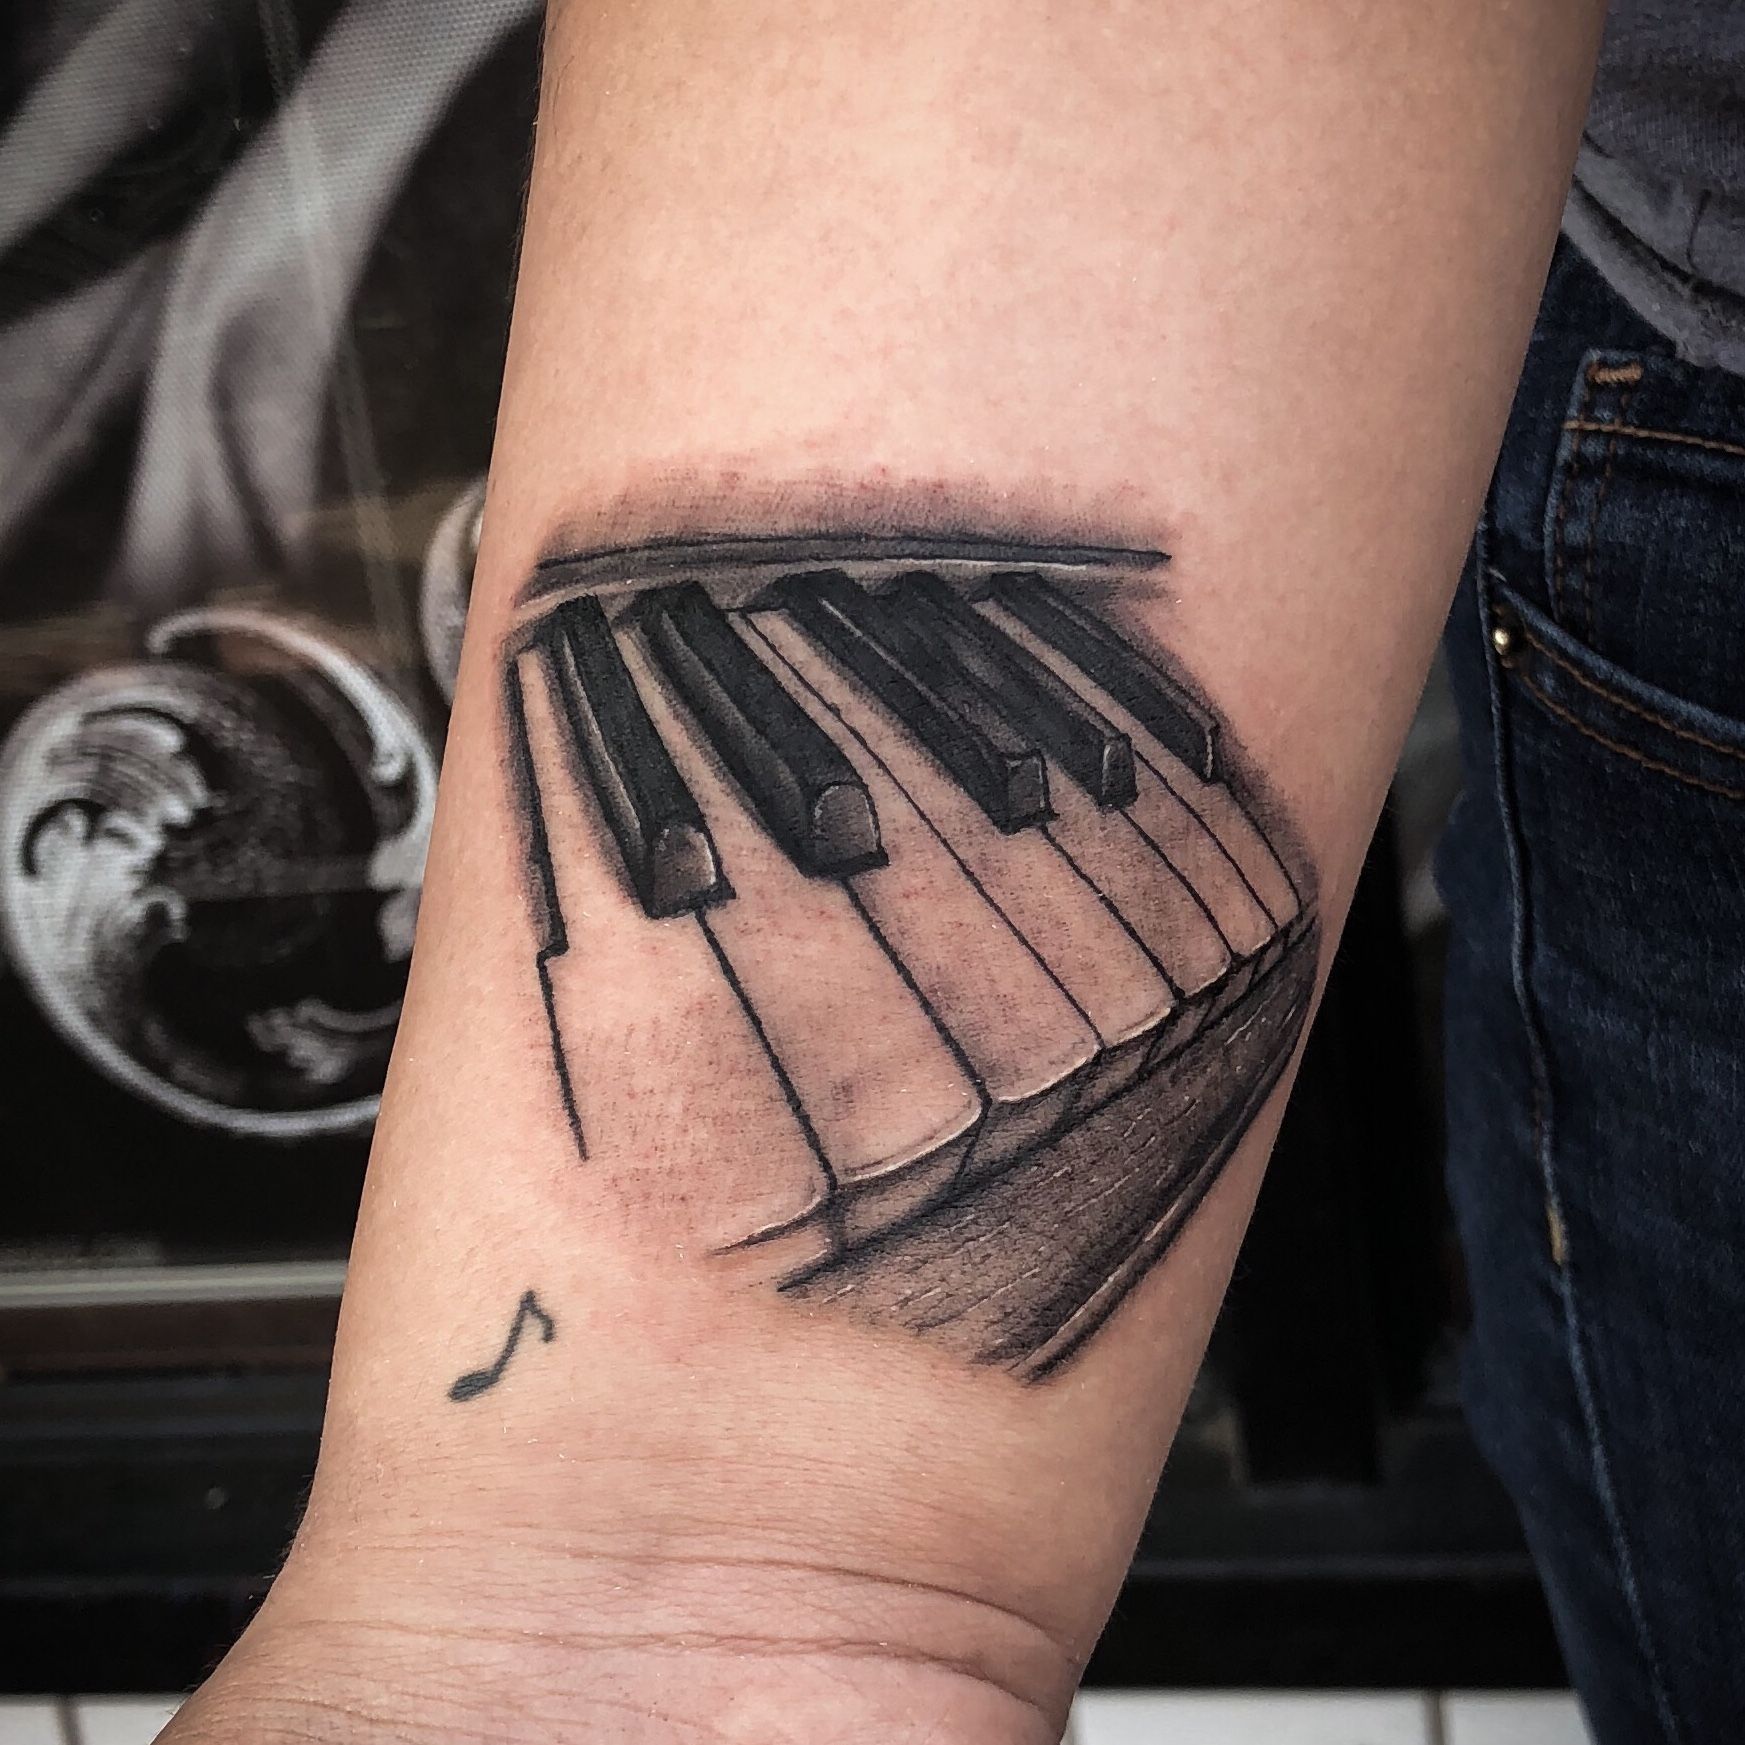 Beautiful Left Arm Piano Keys Tattoo  Piano tattoo Key tattoo designs  Tattoos